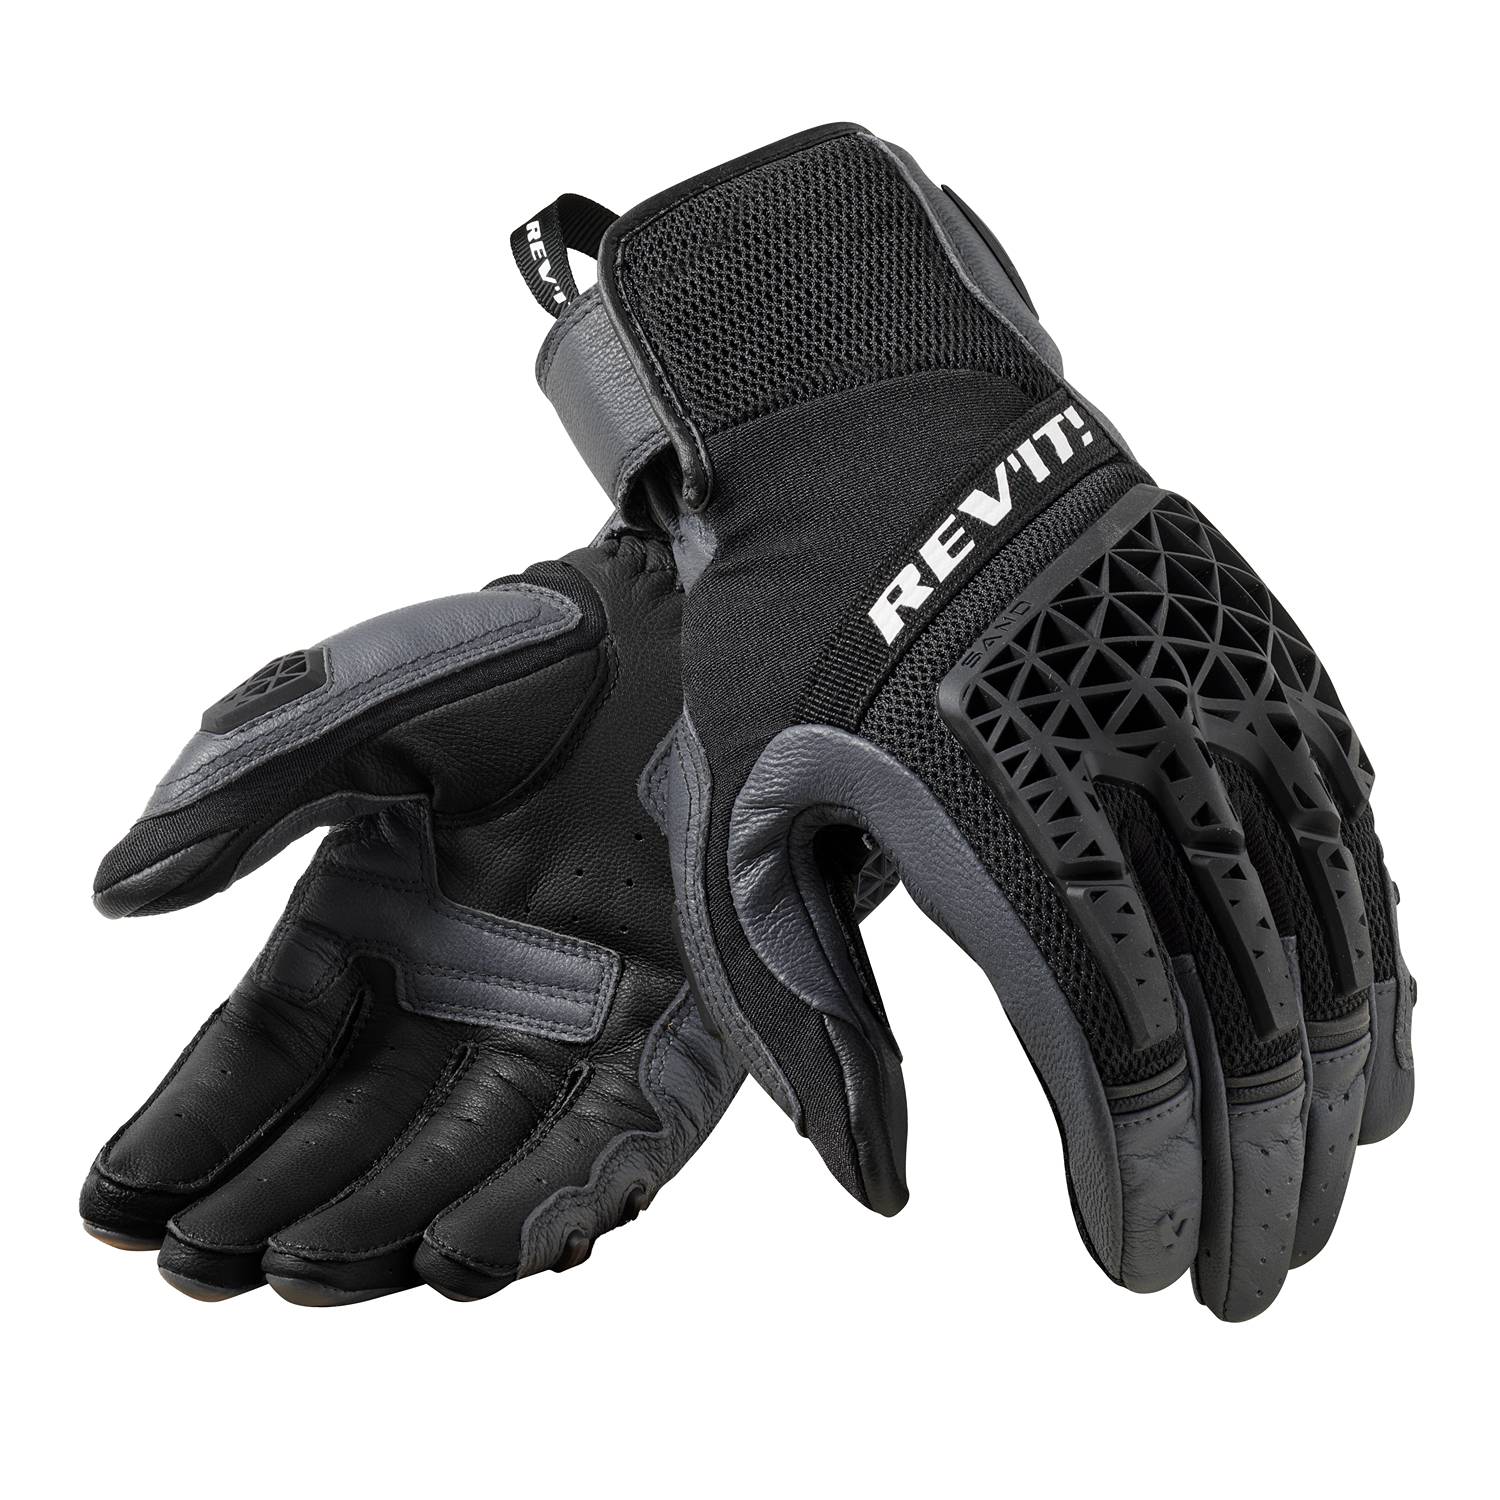 Image of REV'IT! Sand 4 Gloves Gray Black Size L EN